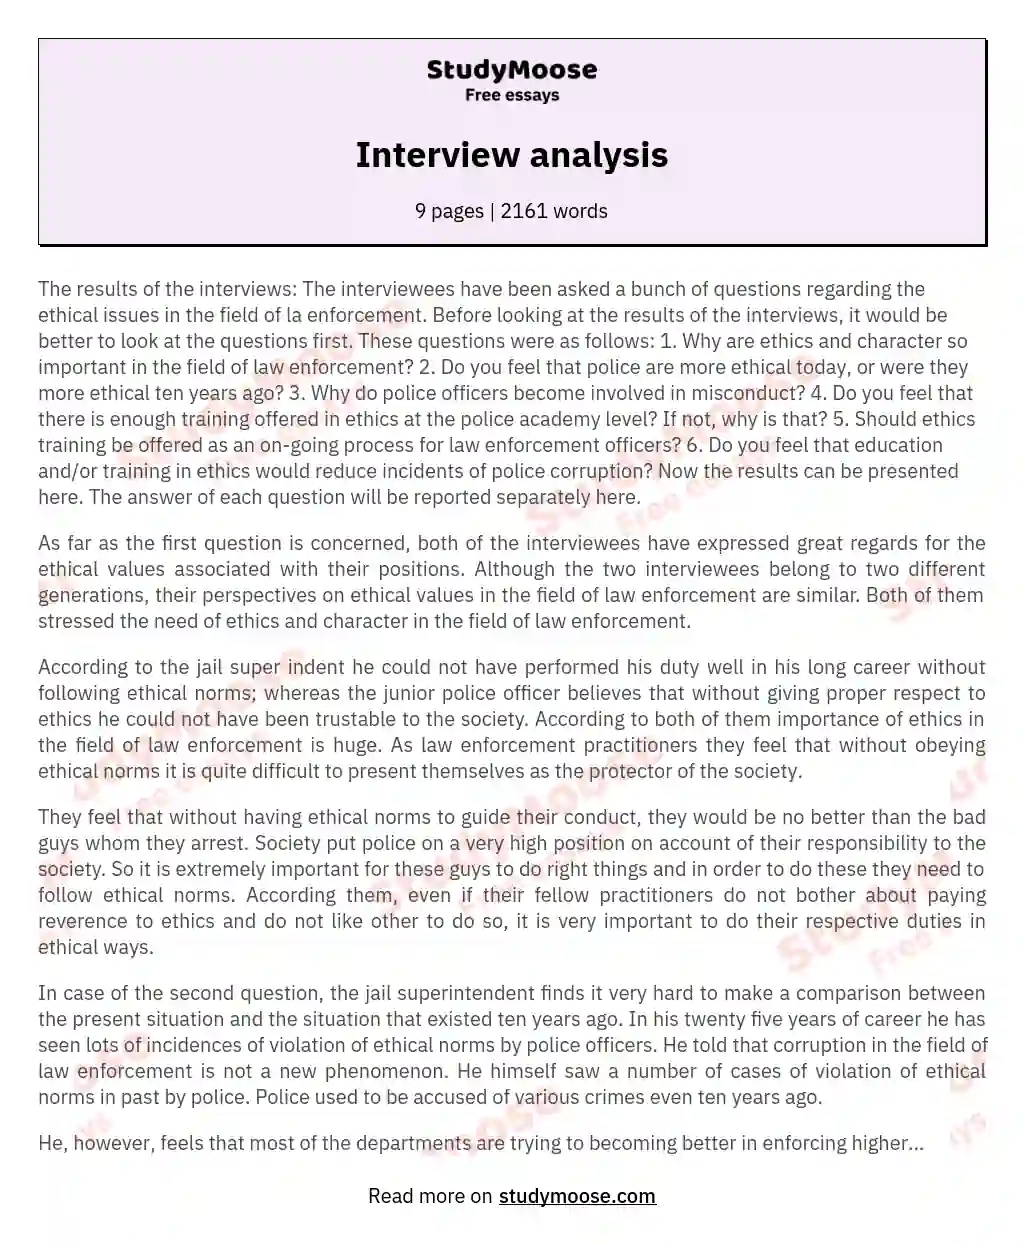 Interview analysis essay